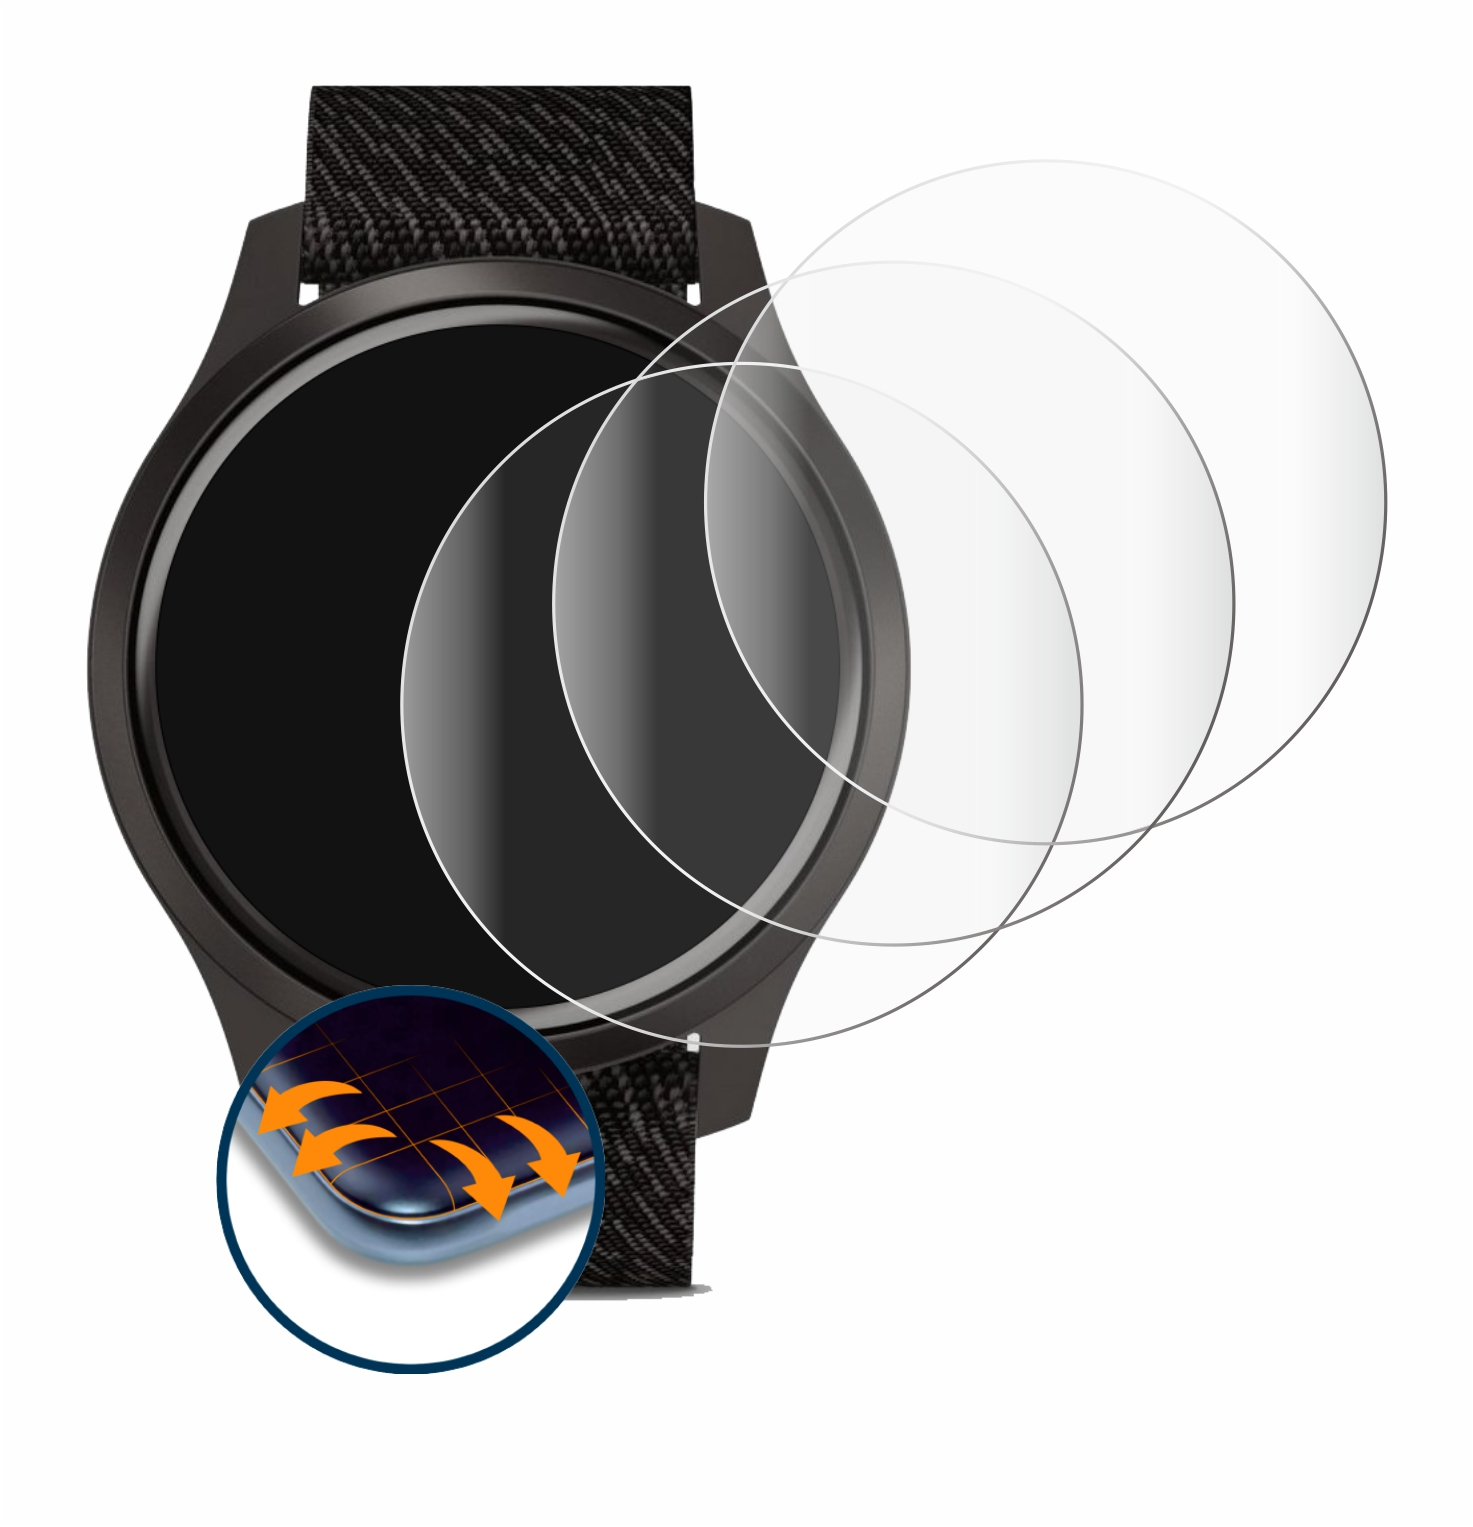 Garmin Curved 3D Style vivomove mm)) SAVVIES Flex Full-Cover 4x Schutzfolie(für (42